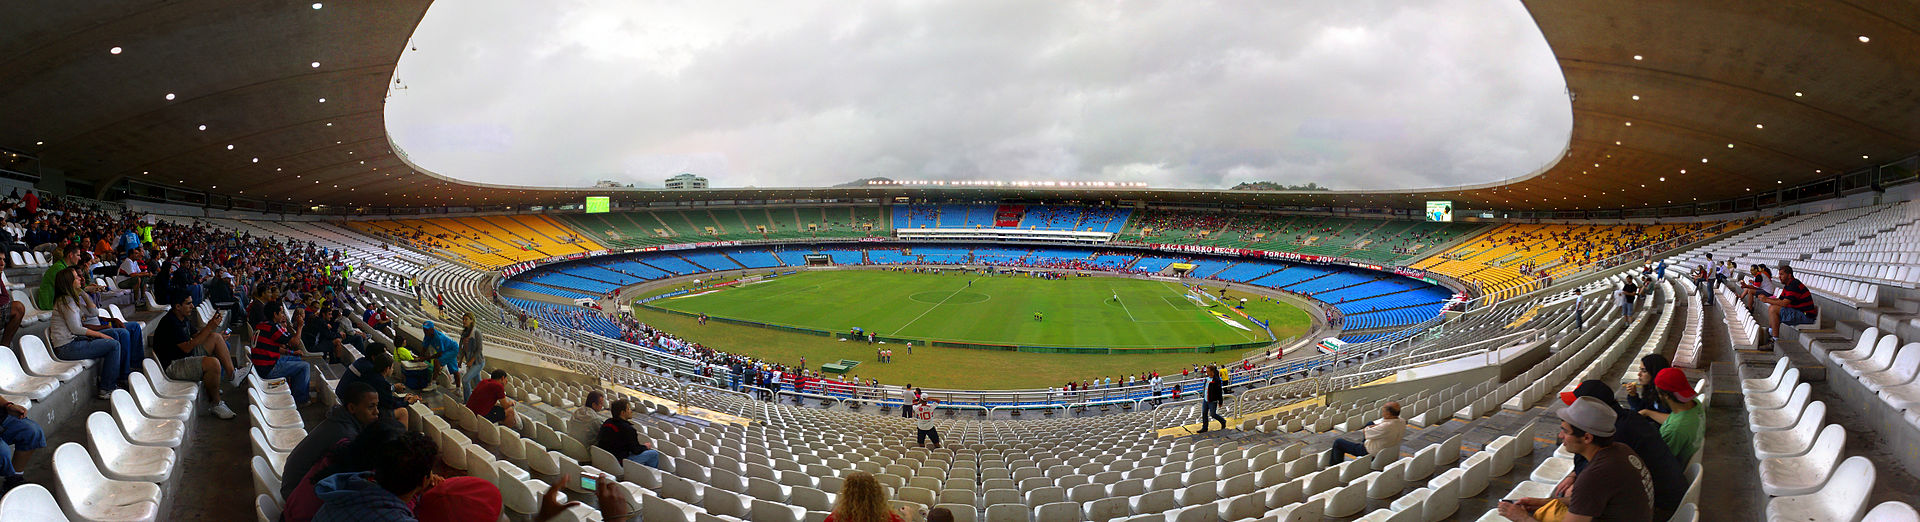 Estádio_do_Maracanã_-_panorama.jpg